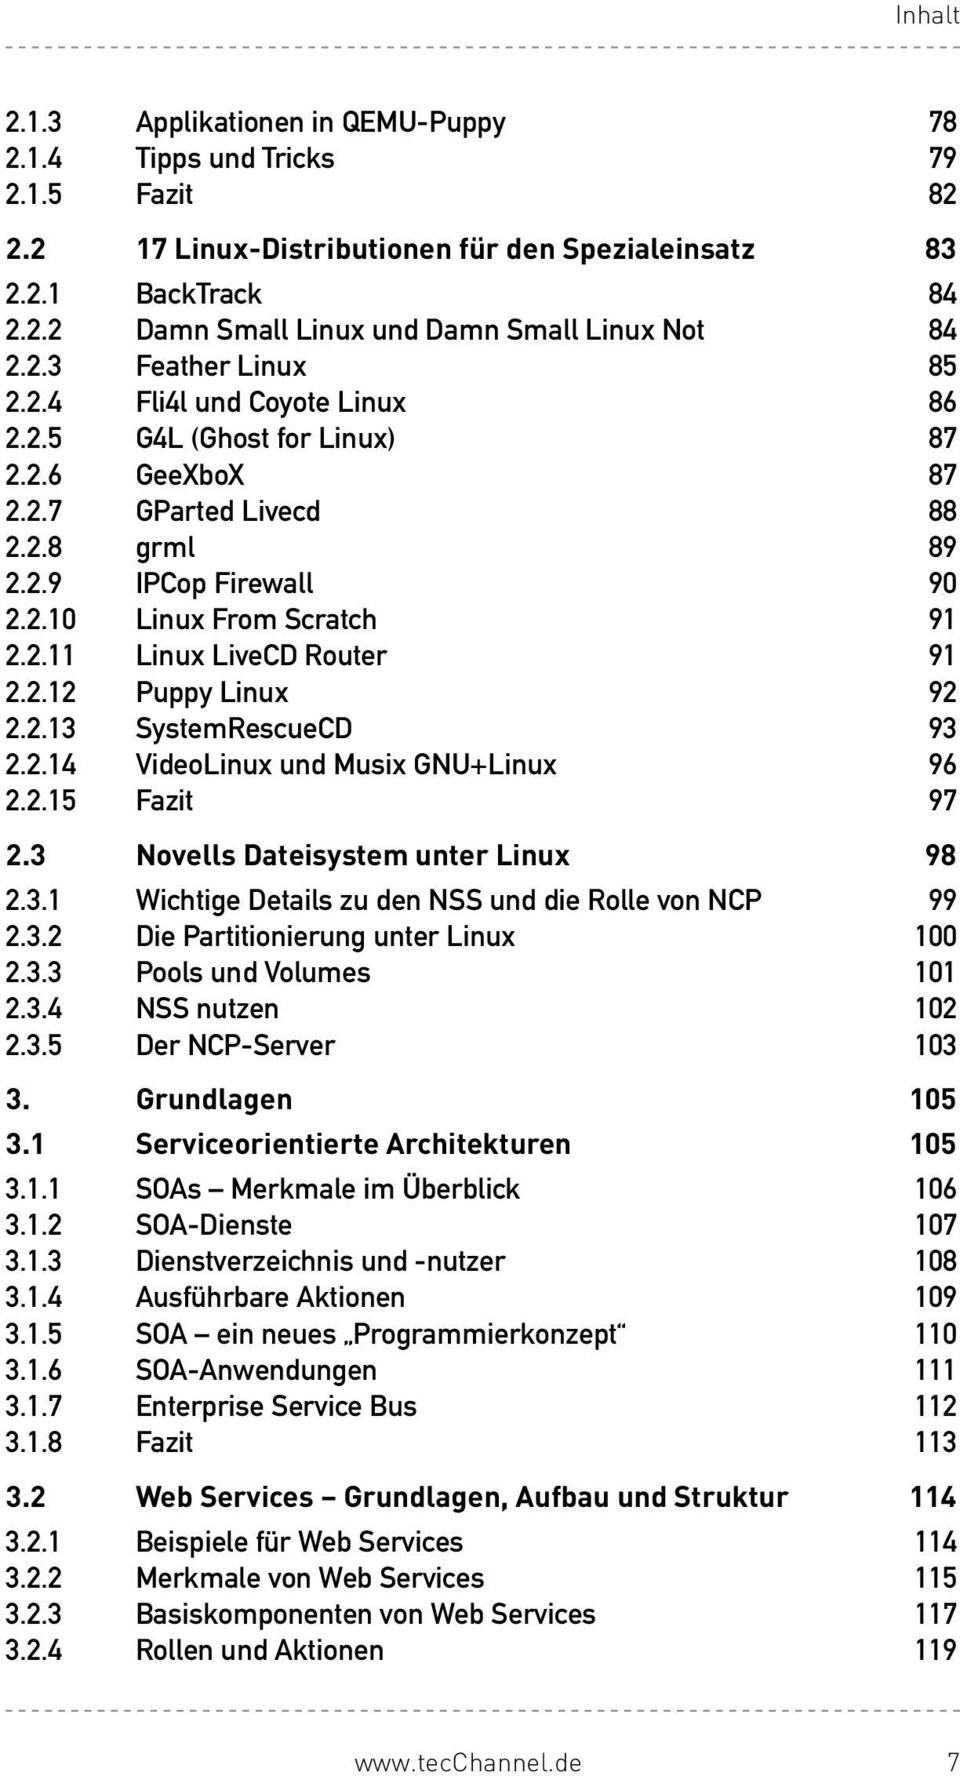 2.13 SystemRescueCD 93 2.2.14 VideoLinuxundMusixGNU+Linux 96 2.2.15 Fazit 97 2.3 Novells Dateisystem unter Linux 98 2.3.1 WichtigeDetailszudenNSSunddieRollevonNCP 99 2.3.2 DiePartitionierungunterLinux 100 2.